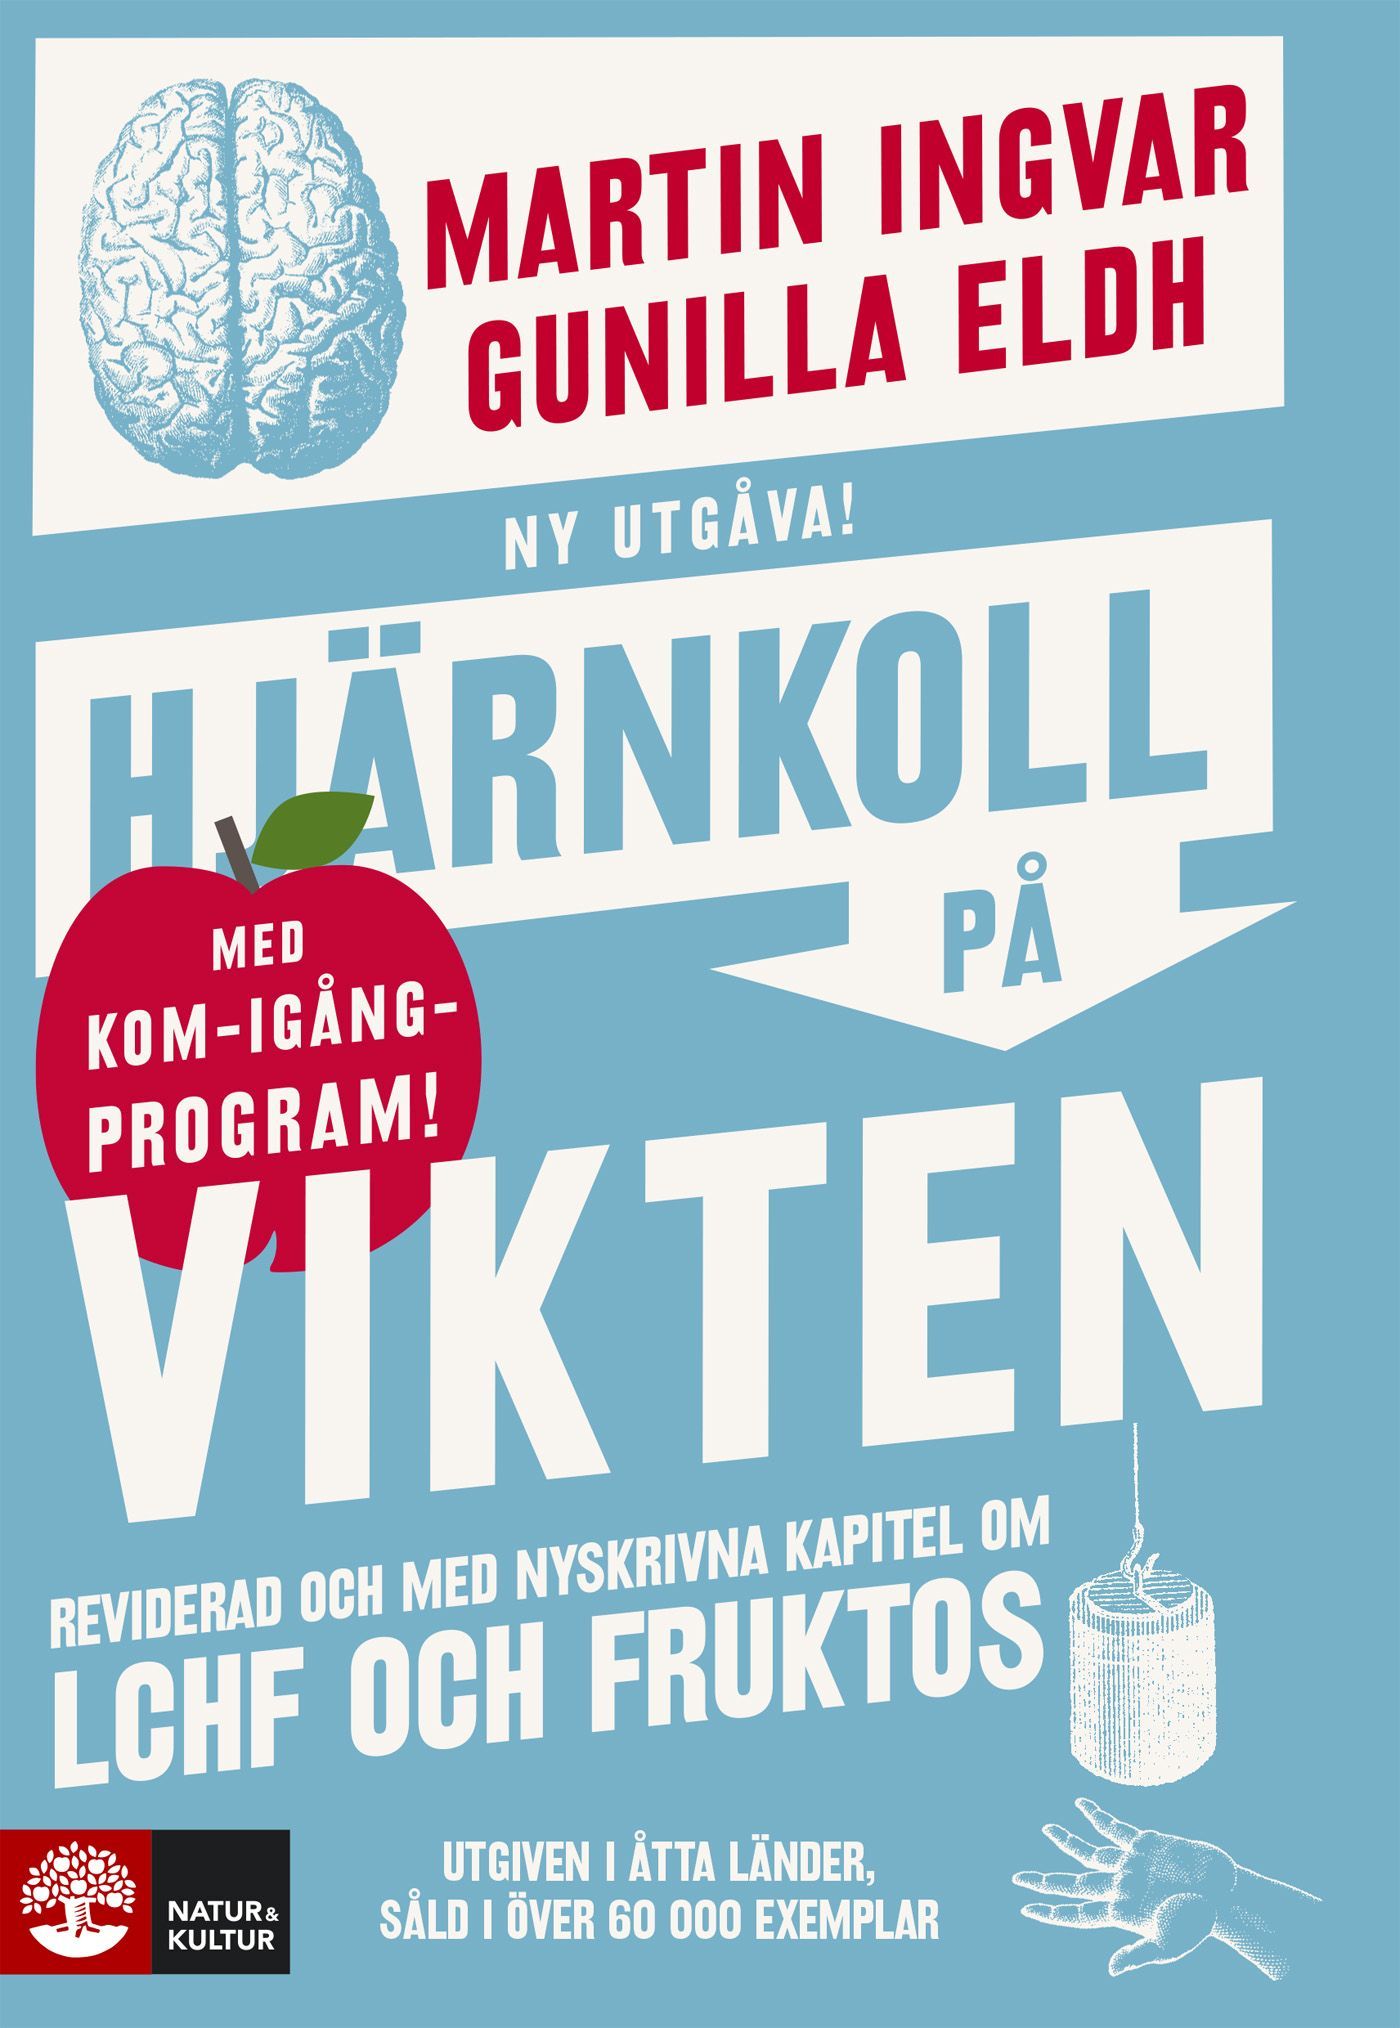 Hjärnkoll på vikten, eBook by Gunilla Eldh, Martin Ingvar